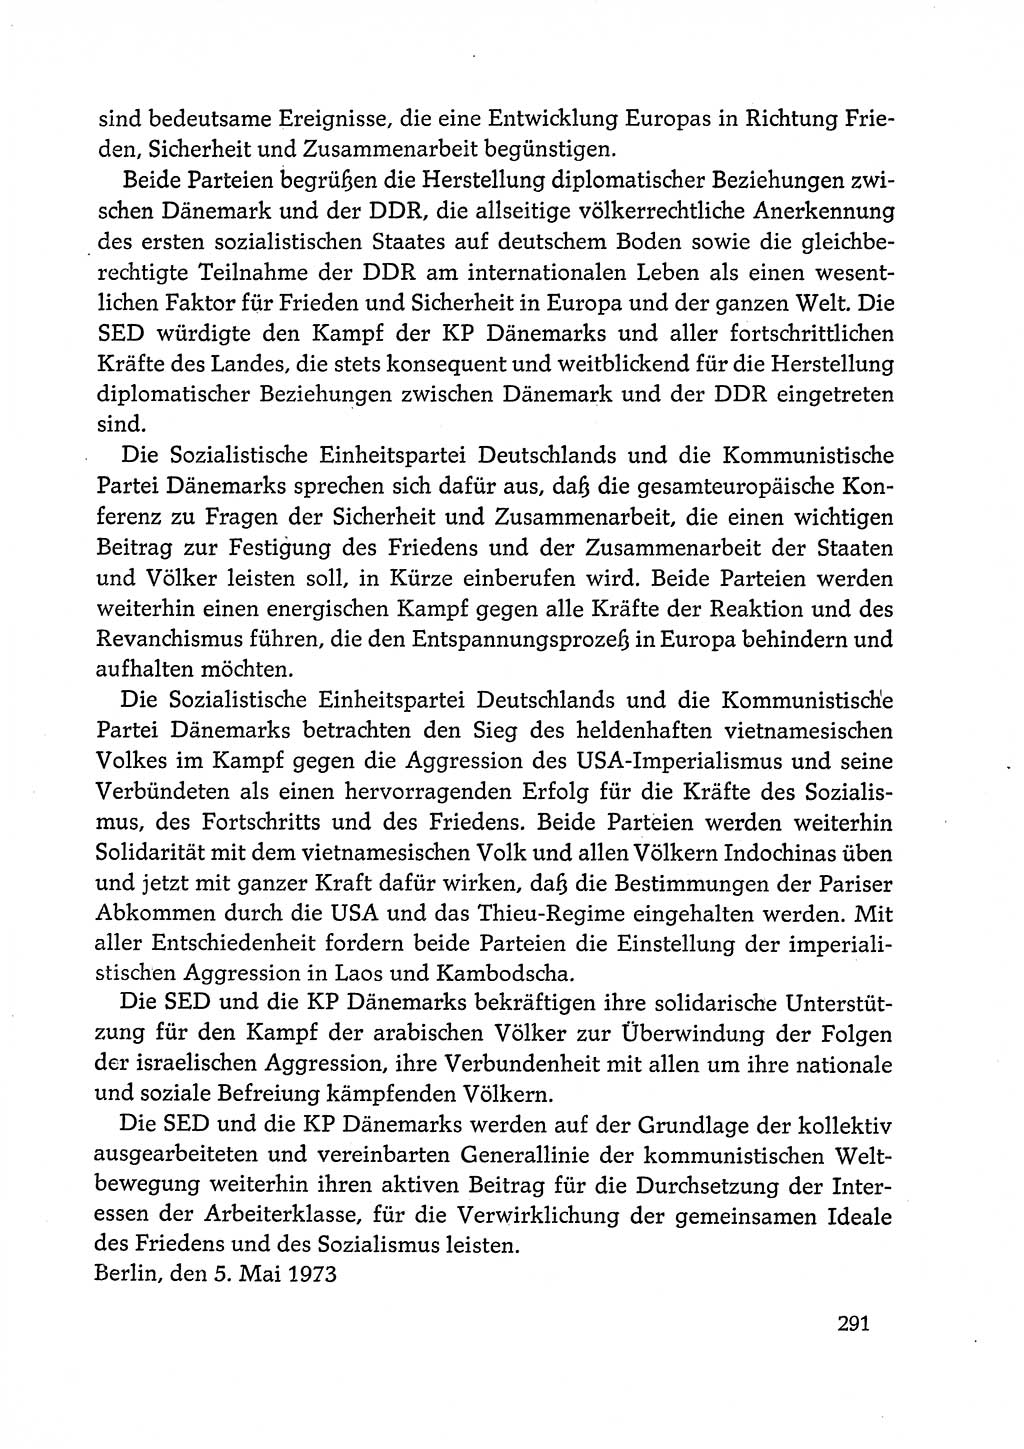 Dokumente der Sozialistischen Einheitspartei Deutschlands (SED) [Deutsche Demokratische Republik (DDR)] 1972-1973, Seite 291 (Dok. SED DDR 1972-1973, S. 291)